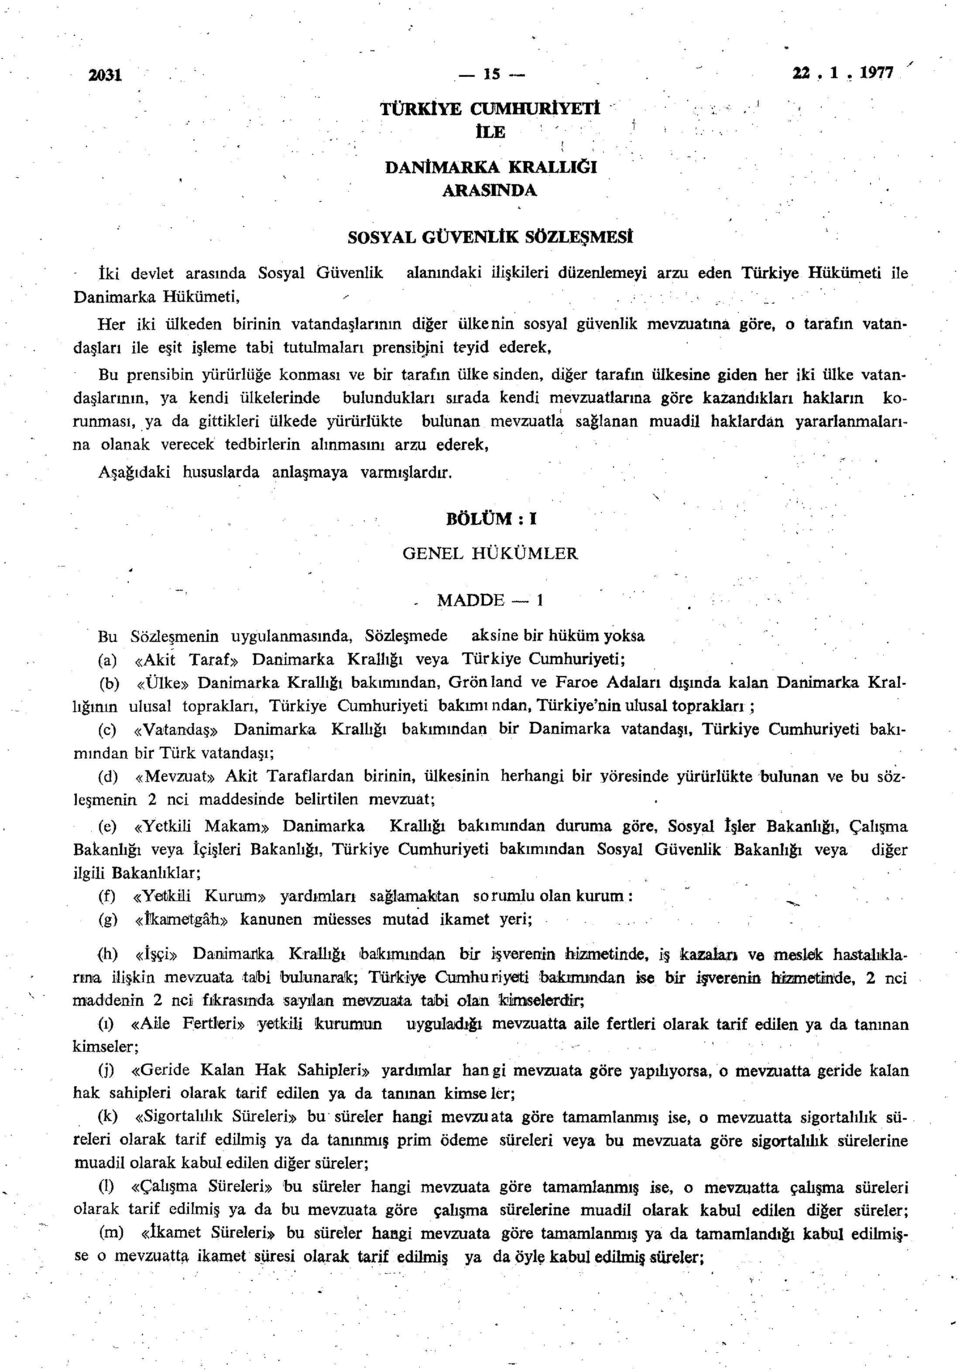 1977 iki devlet arasında Sosyal Güvenlik Danimarka Hükümeti, TÜRKİYE CUMHURİYETİ ÎLE DANİMARKA KRALLIĞI ARASINDA SOSYAL GÜVENLİK SÖZLEŞMESİ alanındaki ilişkileri düzenlemeyi arzu eden Türkiye